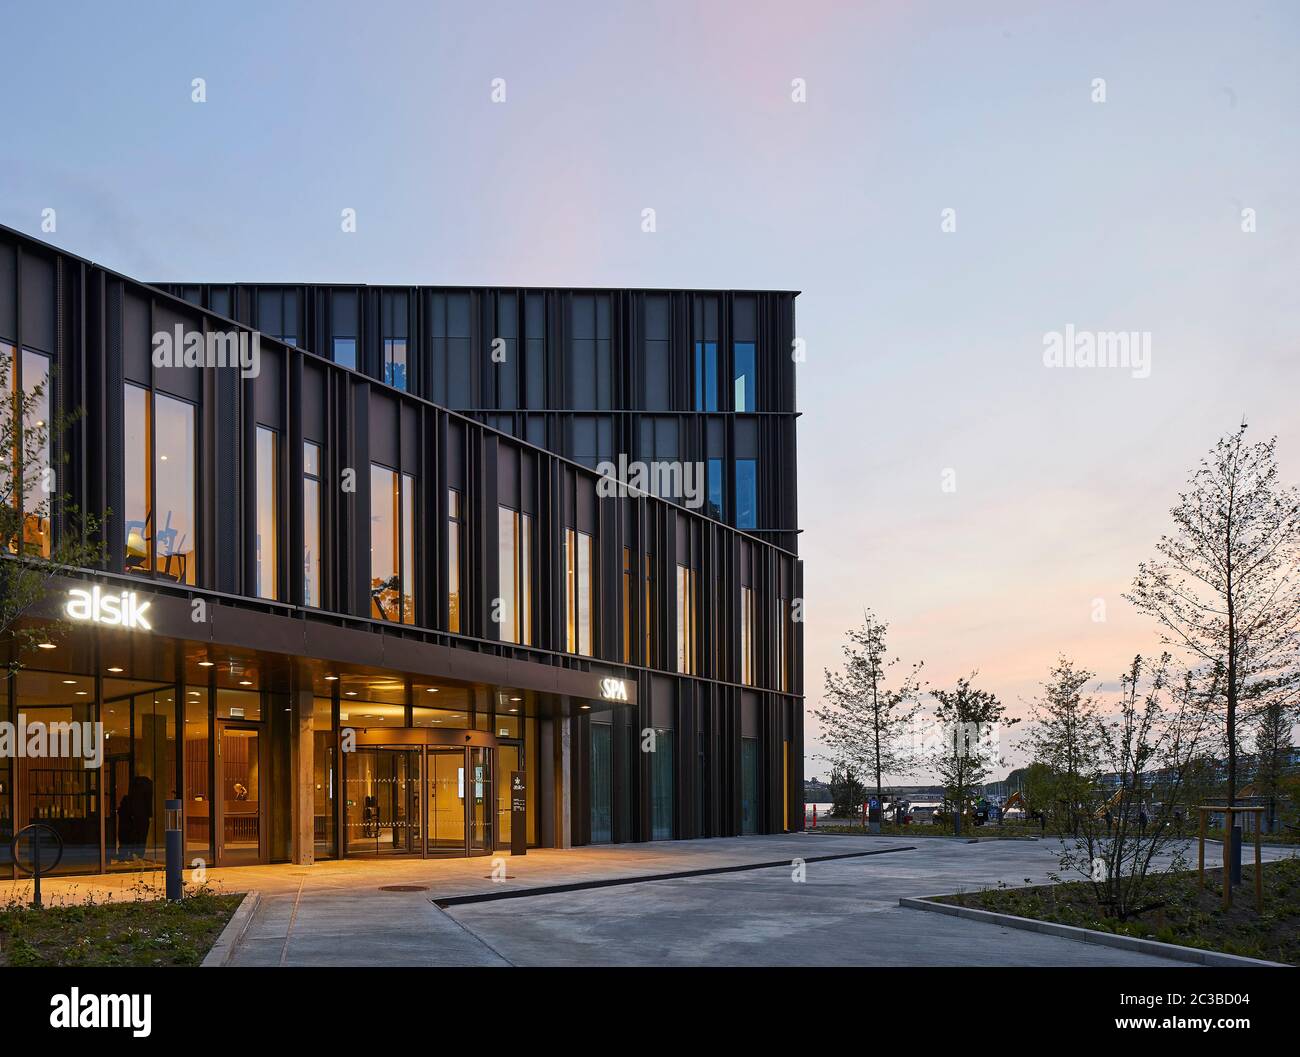 Landschaftlich gestalteter Zugang zum Alsik Spa in der Abenddämmerung. Hotel Alsik, Sønderborg, Dänemark. Architekt: Henning Larsen, 2019. Stockfoto